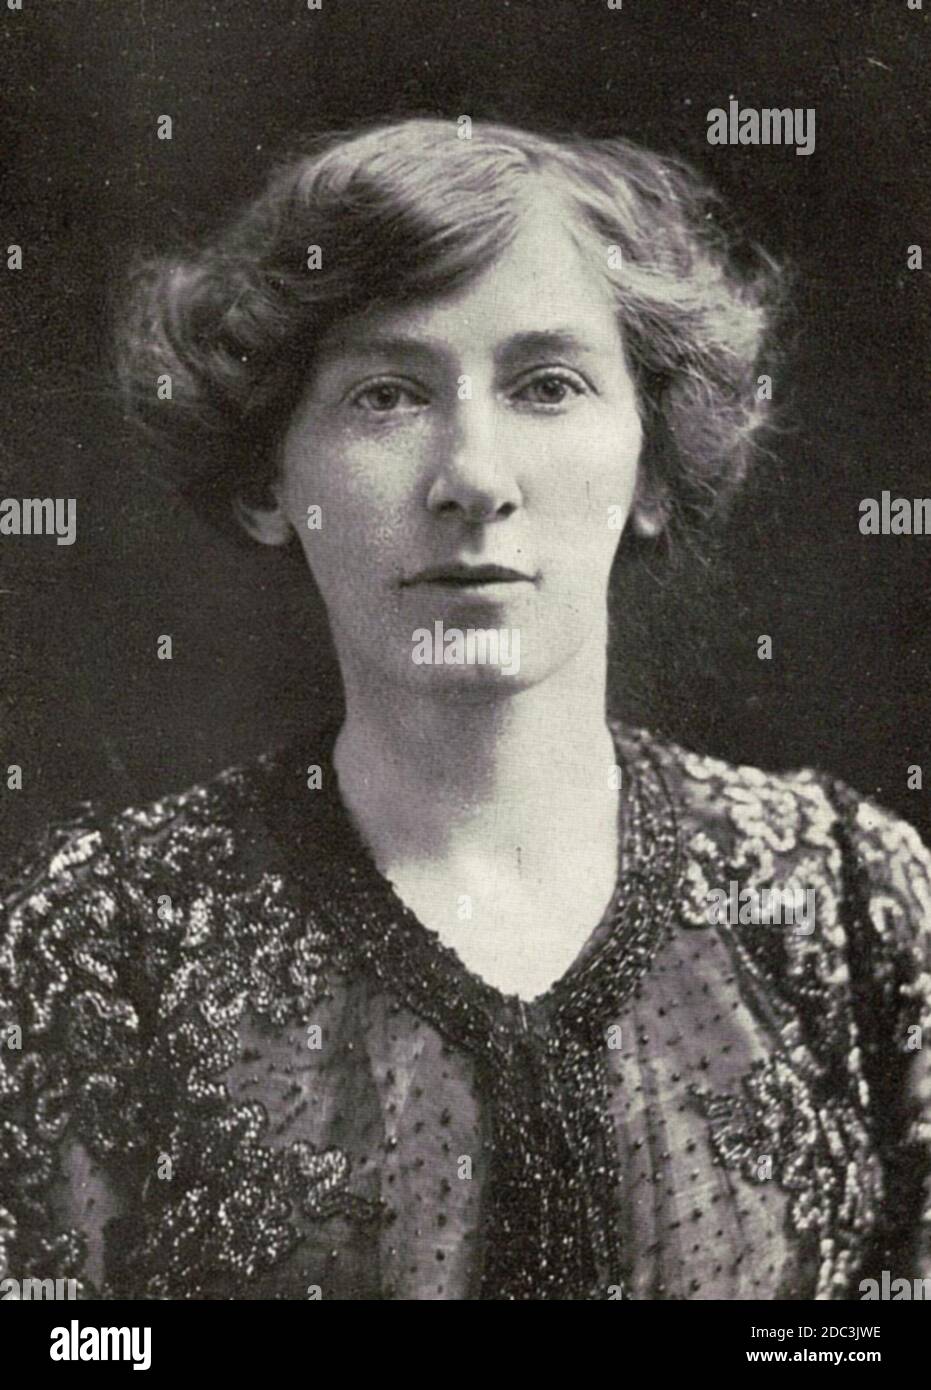 CICELY HAMILTON (1872-1952) autora inglesa, sufragánea, dramaturga y feminista que compuso la letra de 'la marcha de las mujeres' compuesta por Ethel Smyth. Foto sobre 1906. Foto de stock